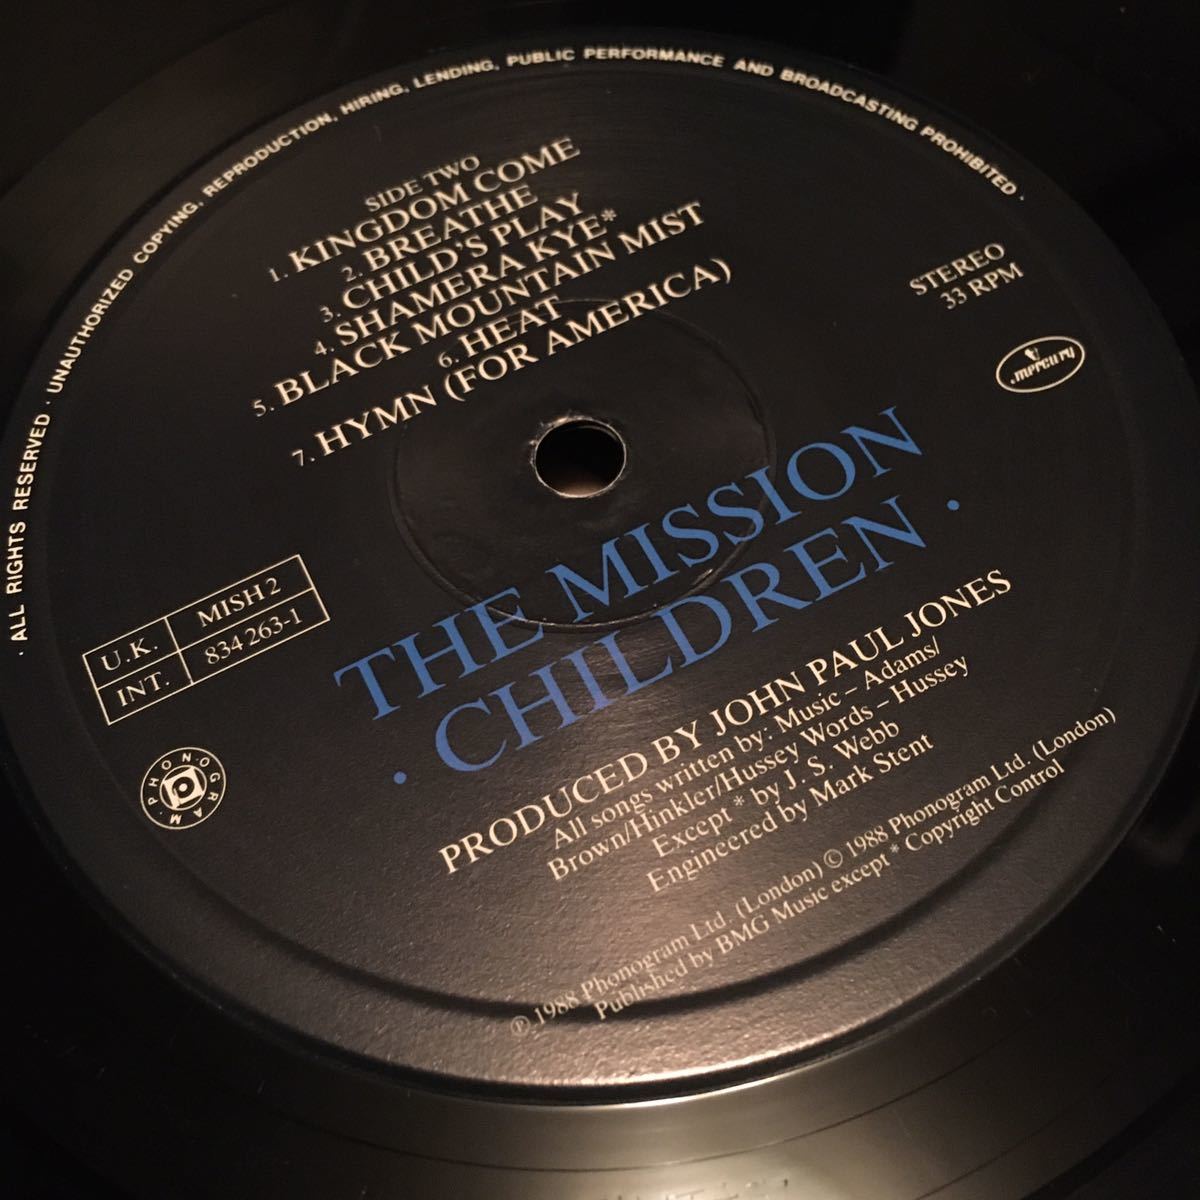 【レコード】【超レア】 The Mission - Children（834 263-1）【ザ・ミッション】【Led Zeppelin／John Paul Jones】【Mercury】_画像6